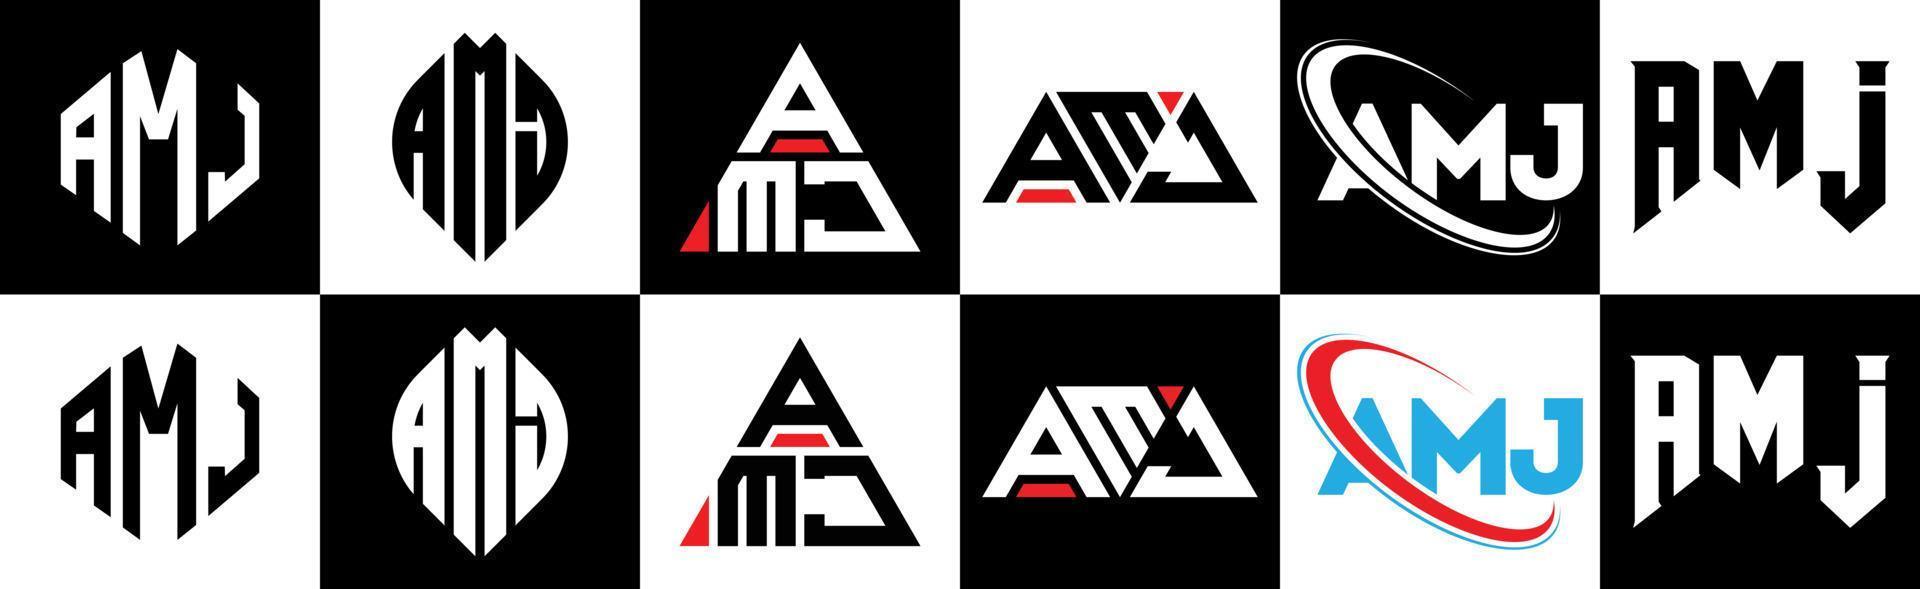 création de logo de lettre amj en six styles. amj polygone, cercle, triangle, hexagone, style plat et simple avec logo de lettre de variation de couleur noir et blanc dans un plan de travail. amj logo minimaliste et classique vecteur